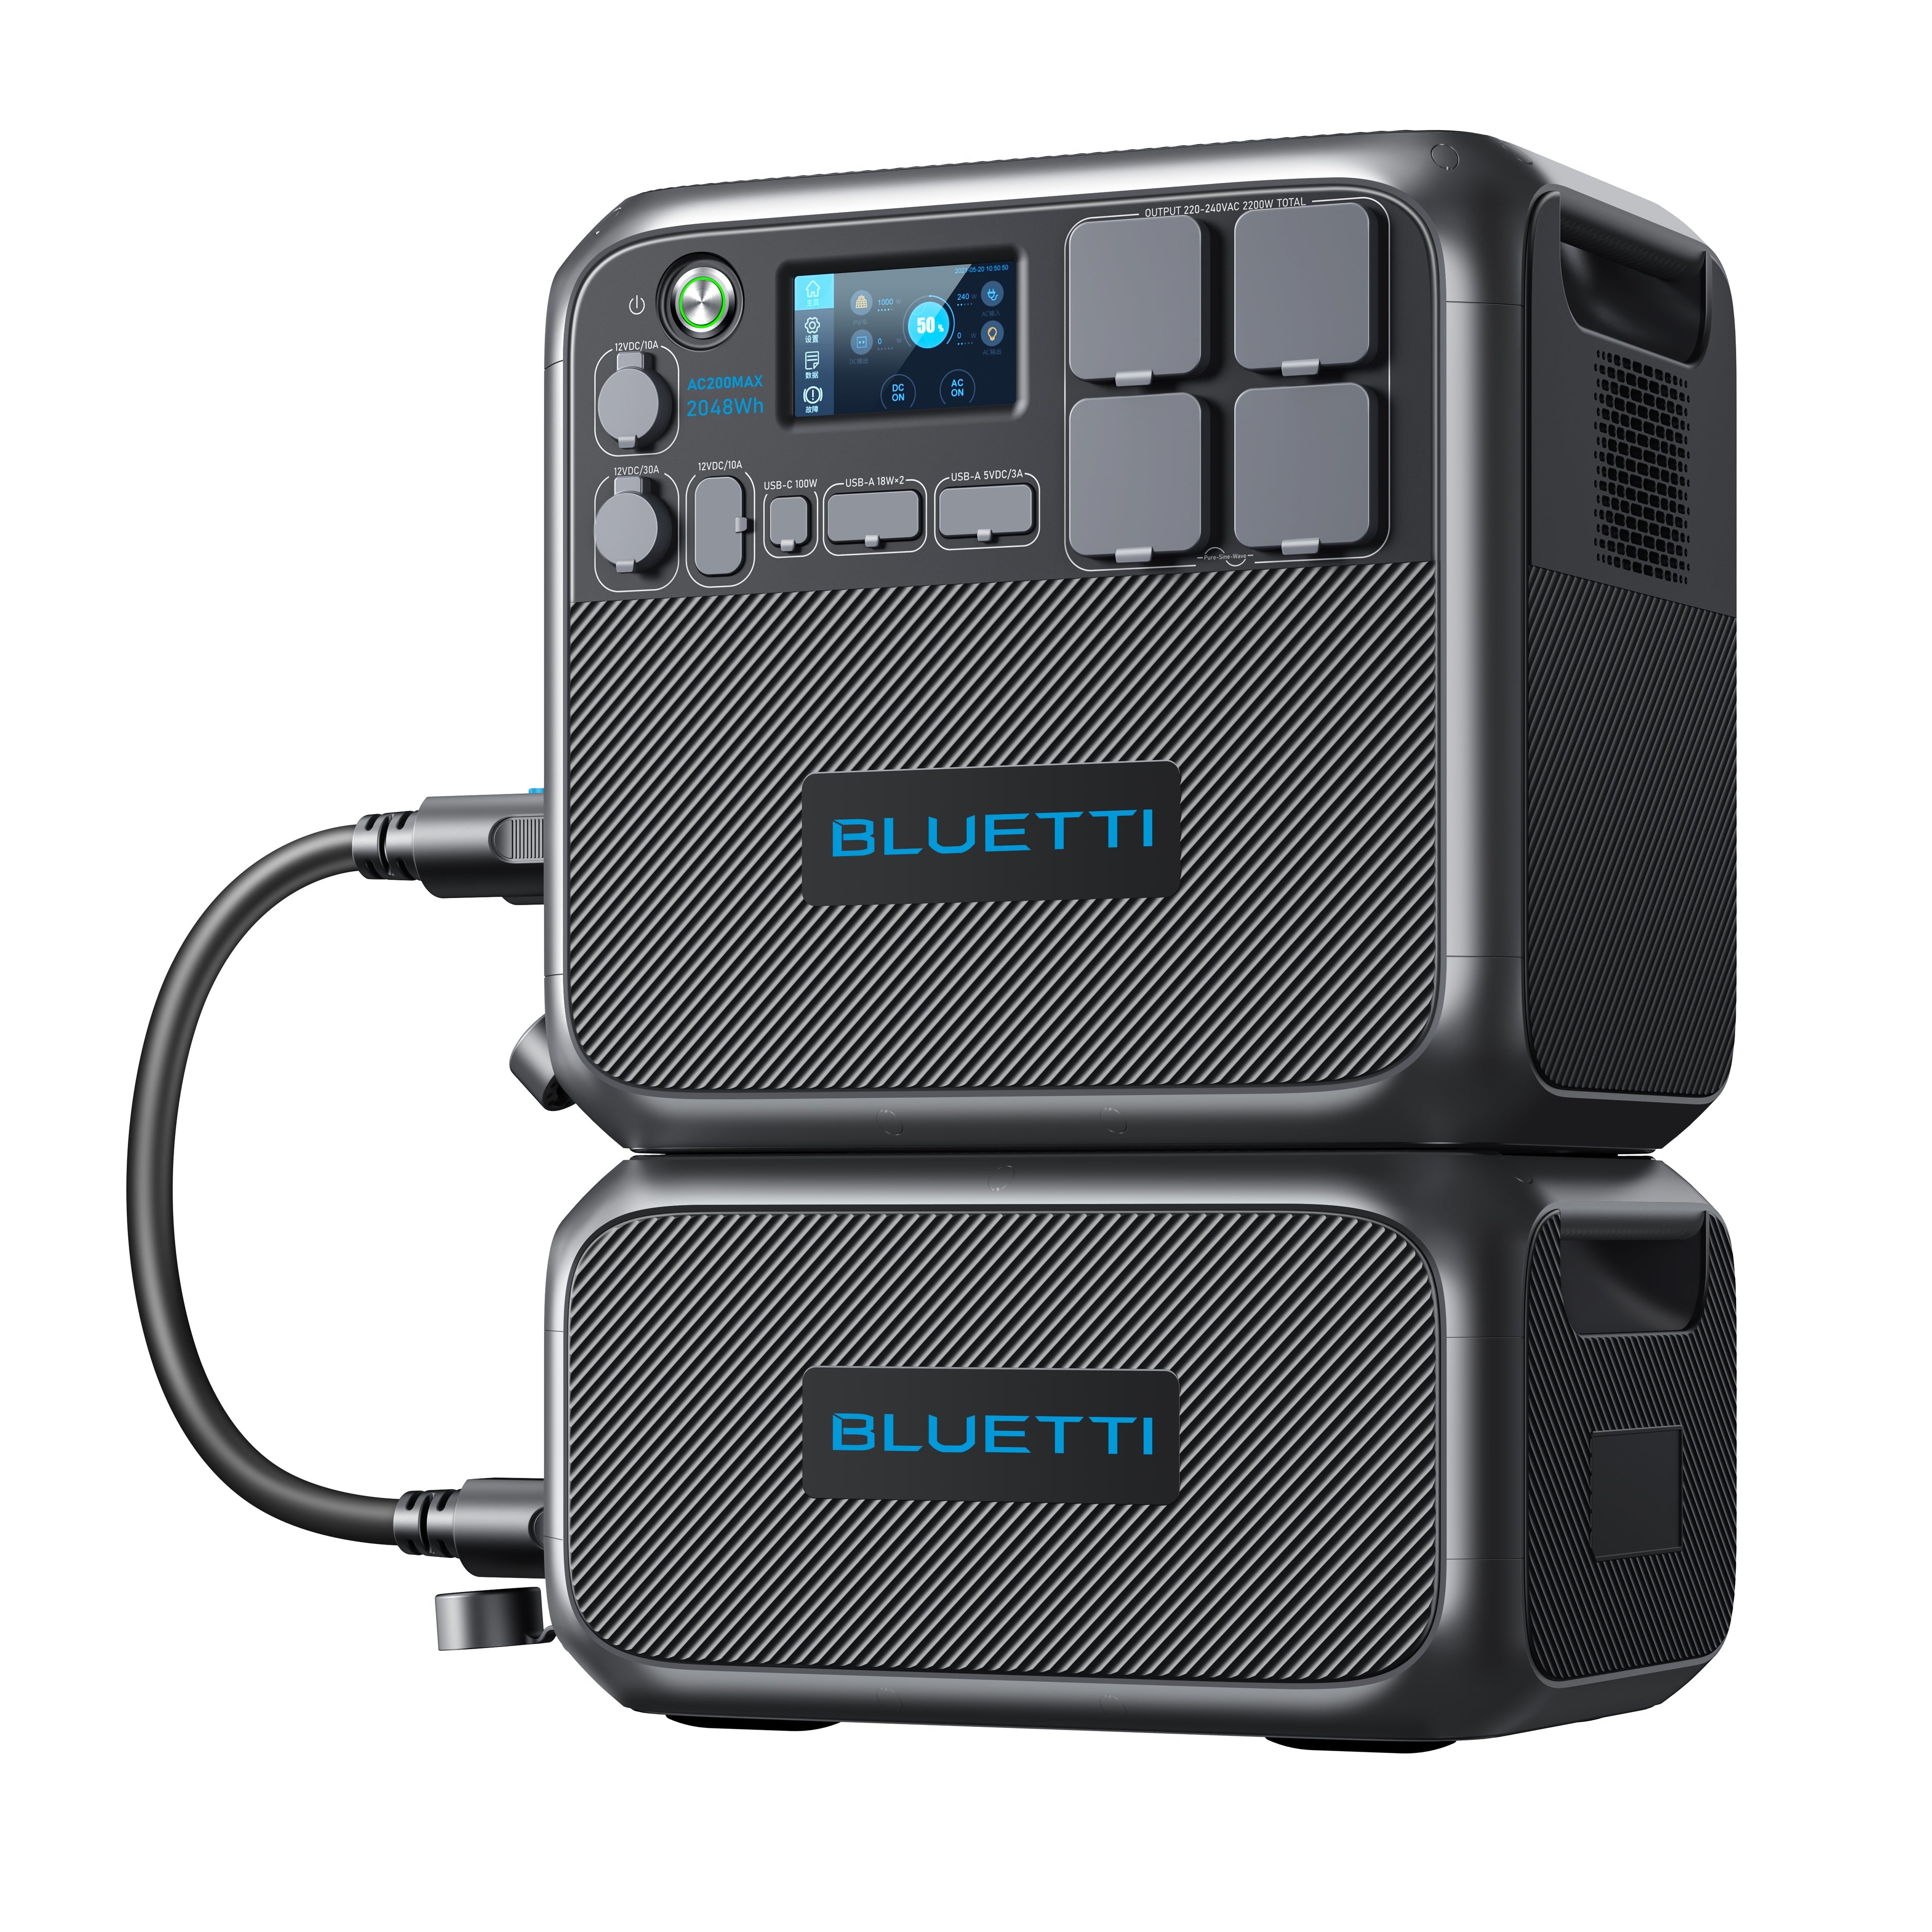 Bluetti B230 2048Wh Udvidelsesbatteri - Øget Kapacitet Til Dit Energi System